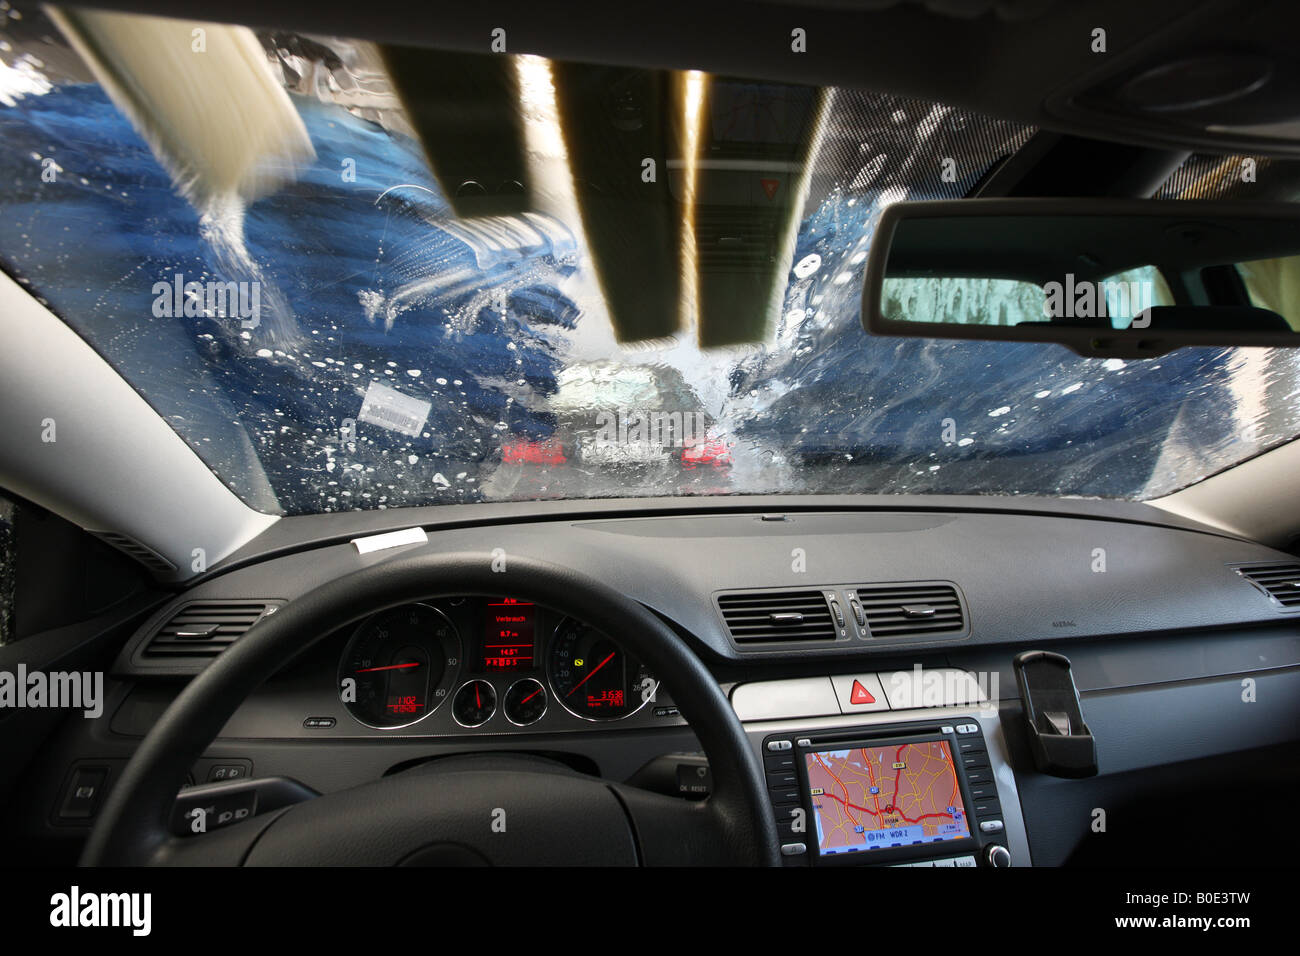 Car drives through a car wash machine. Stock Photo